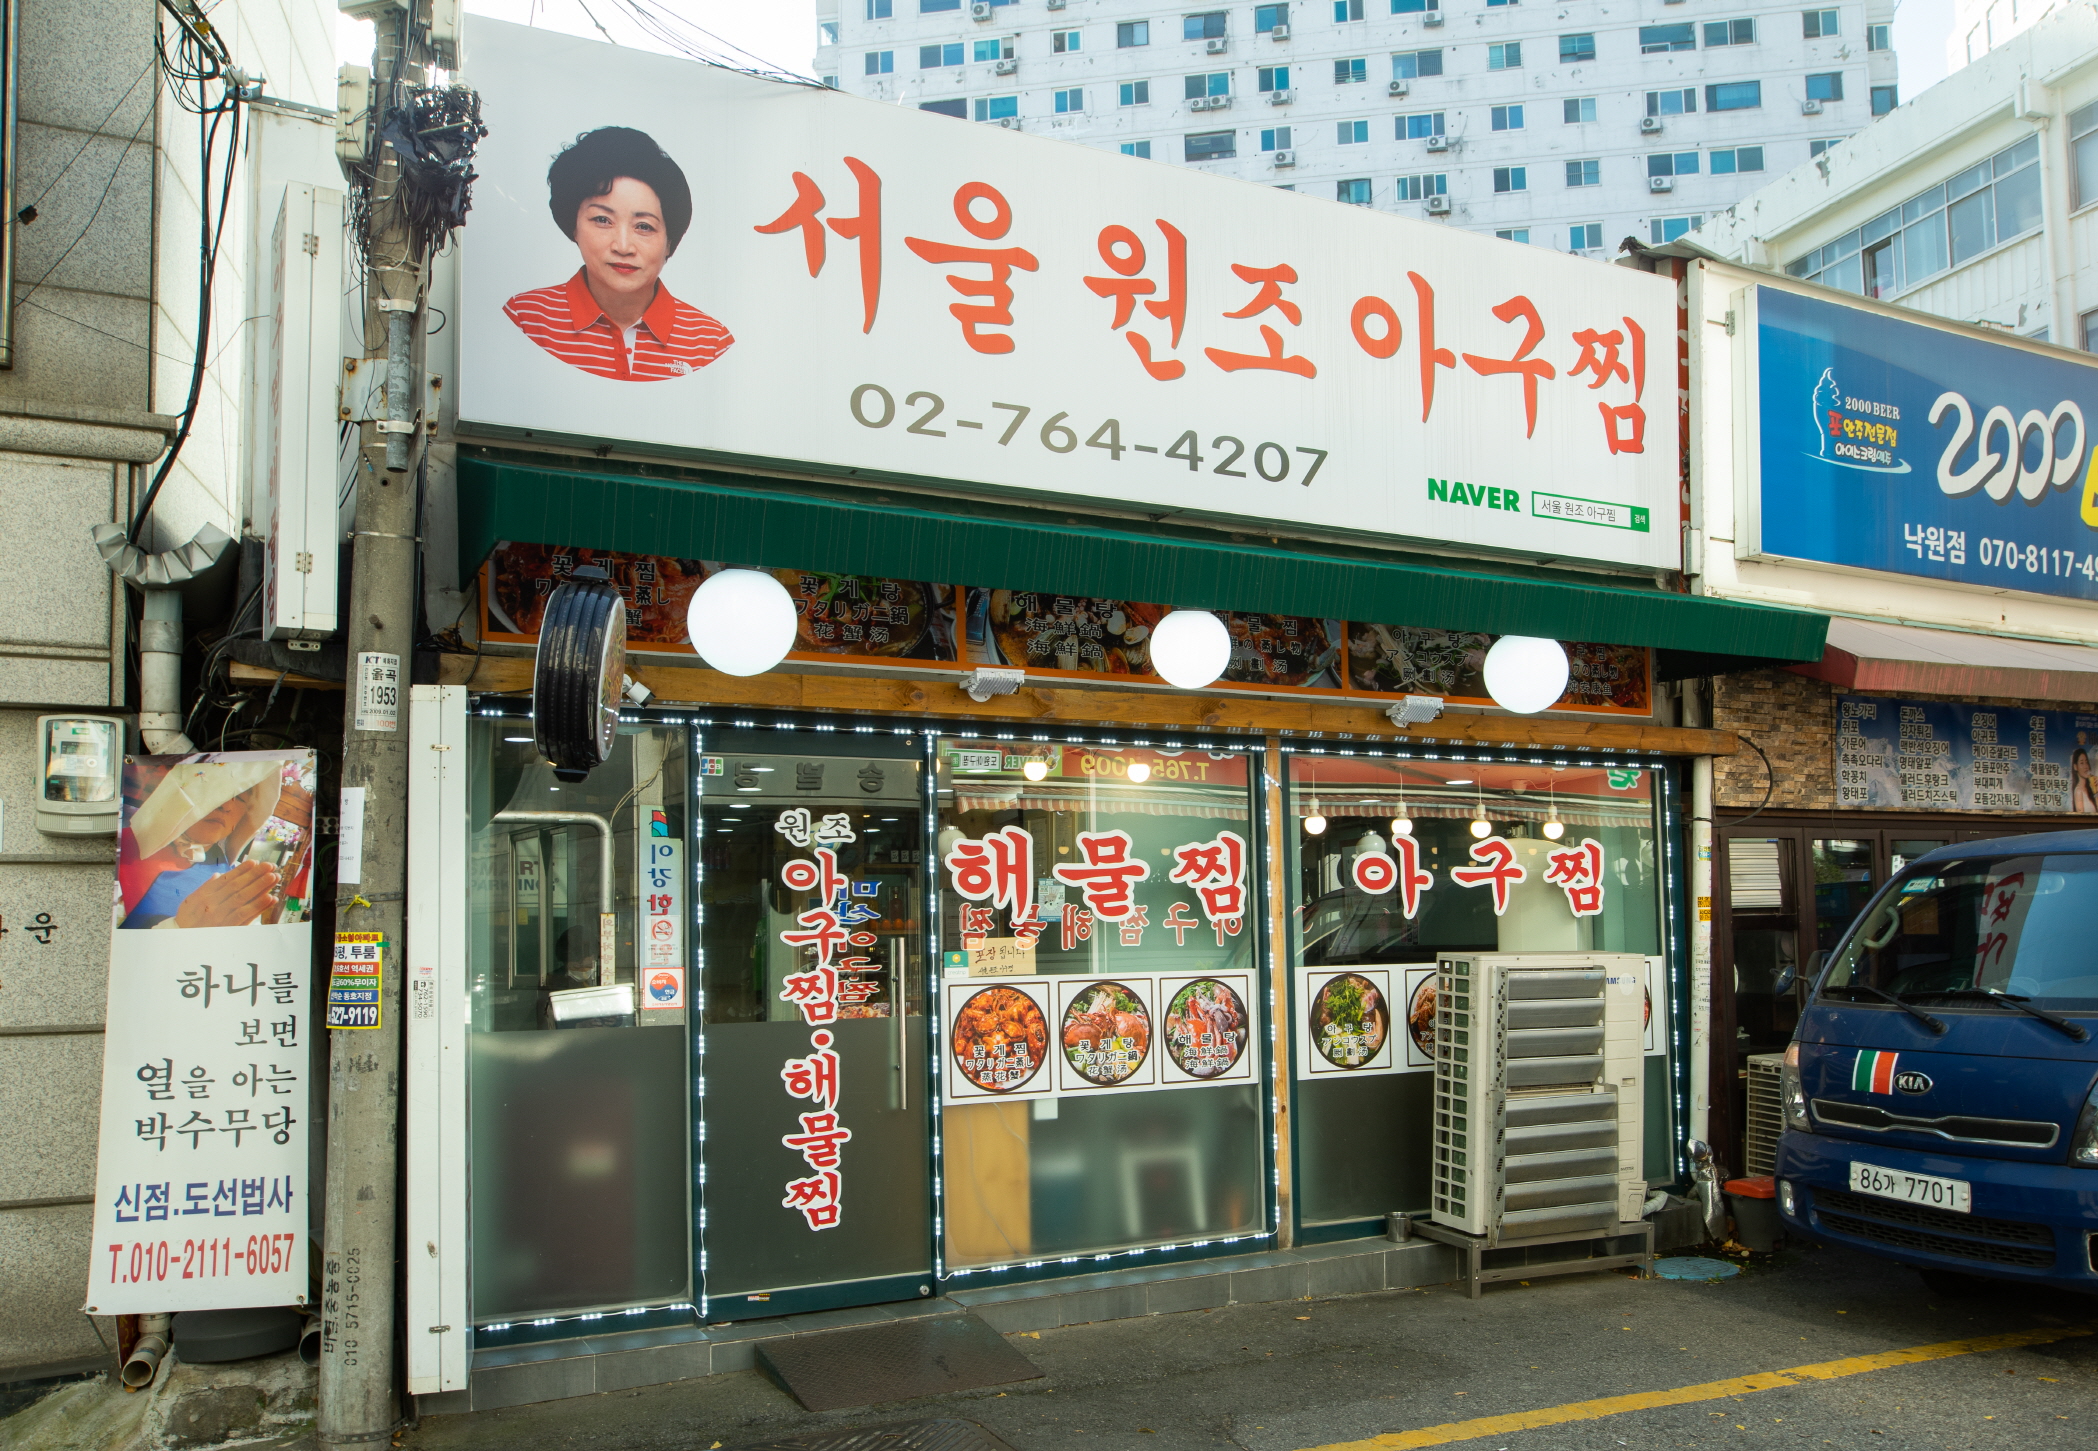 Seoul Wonjo Agujjim (서울 원조아구찜)